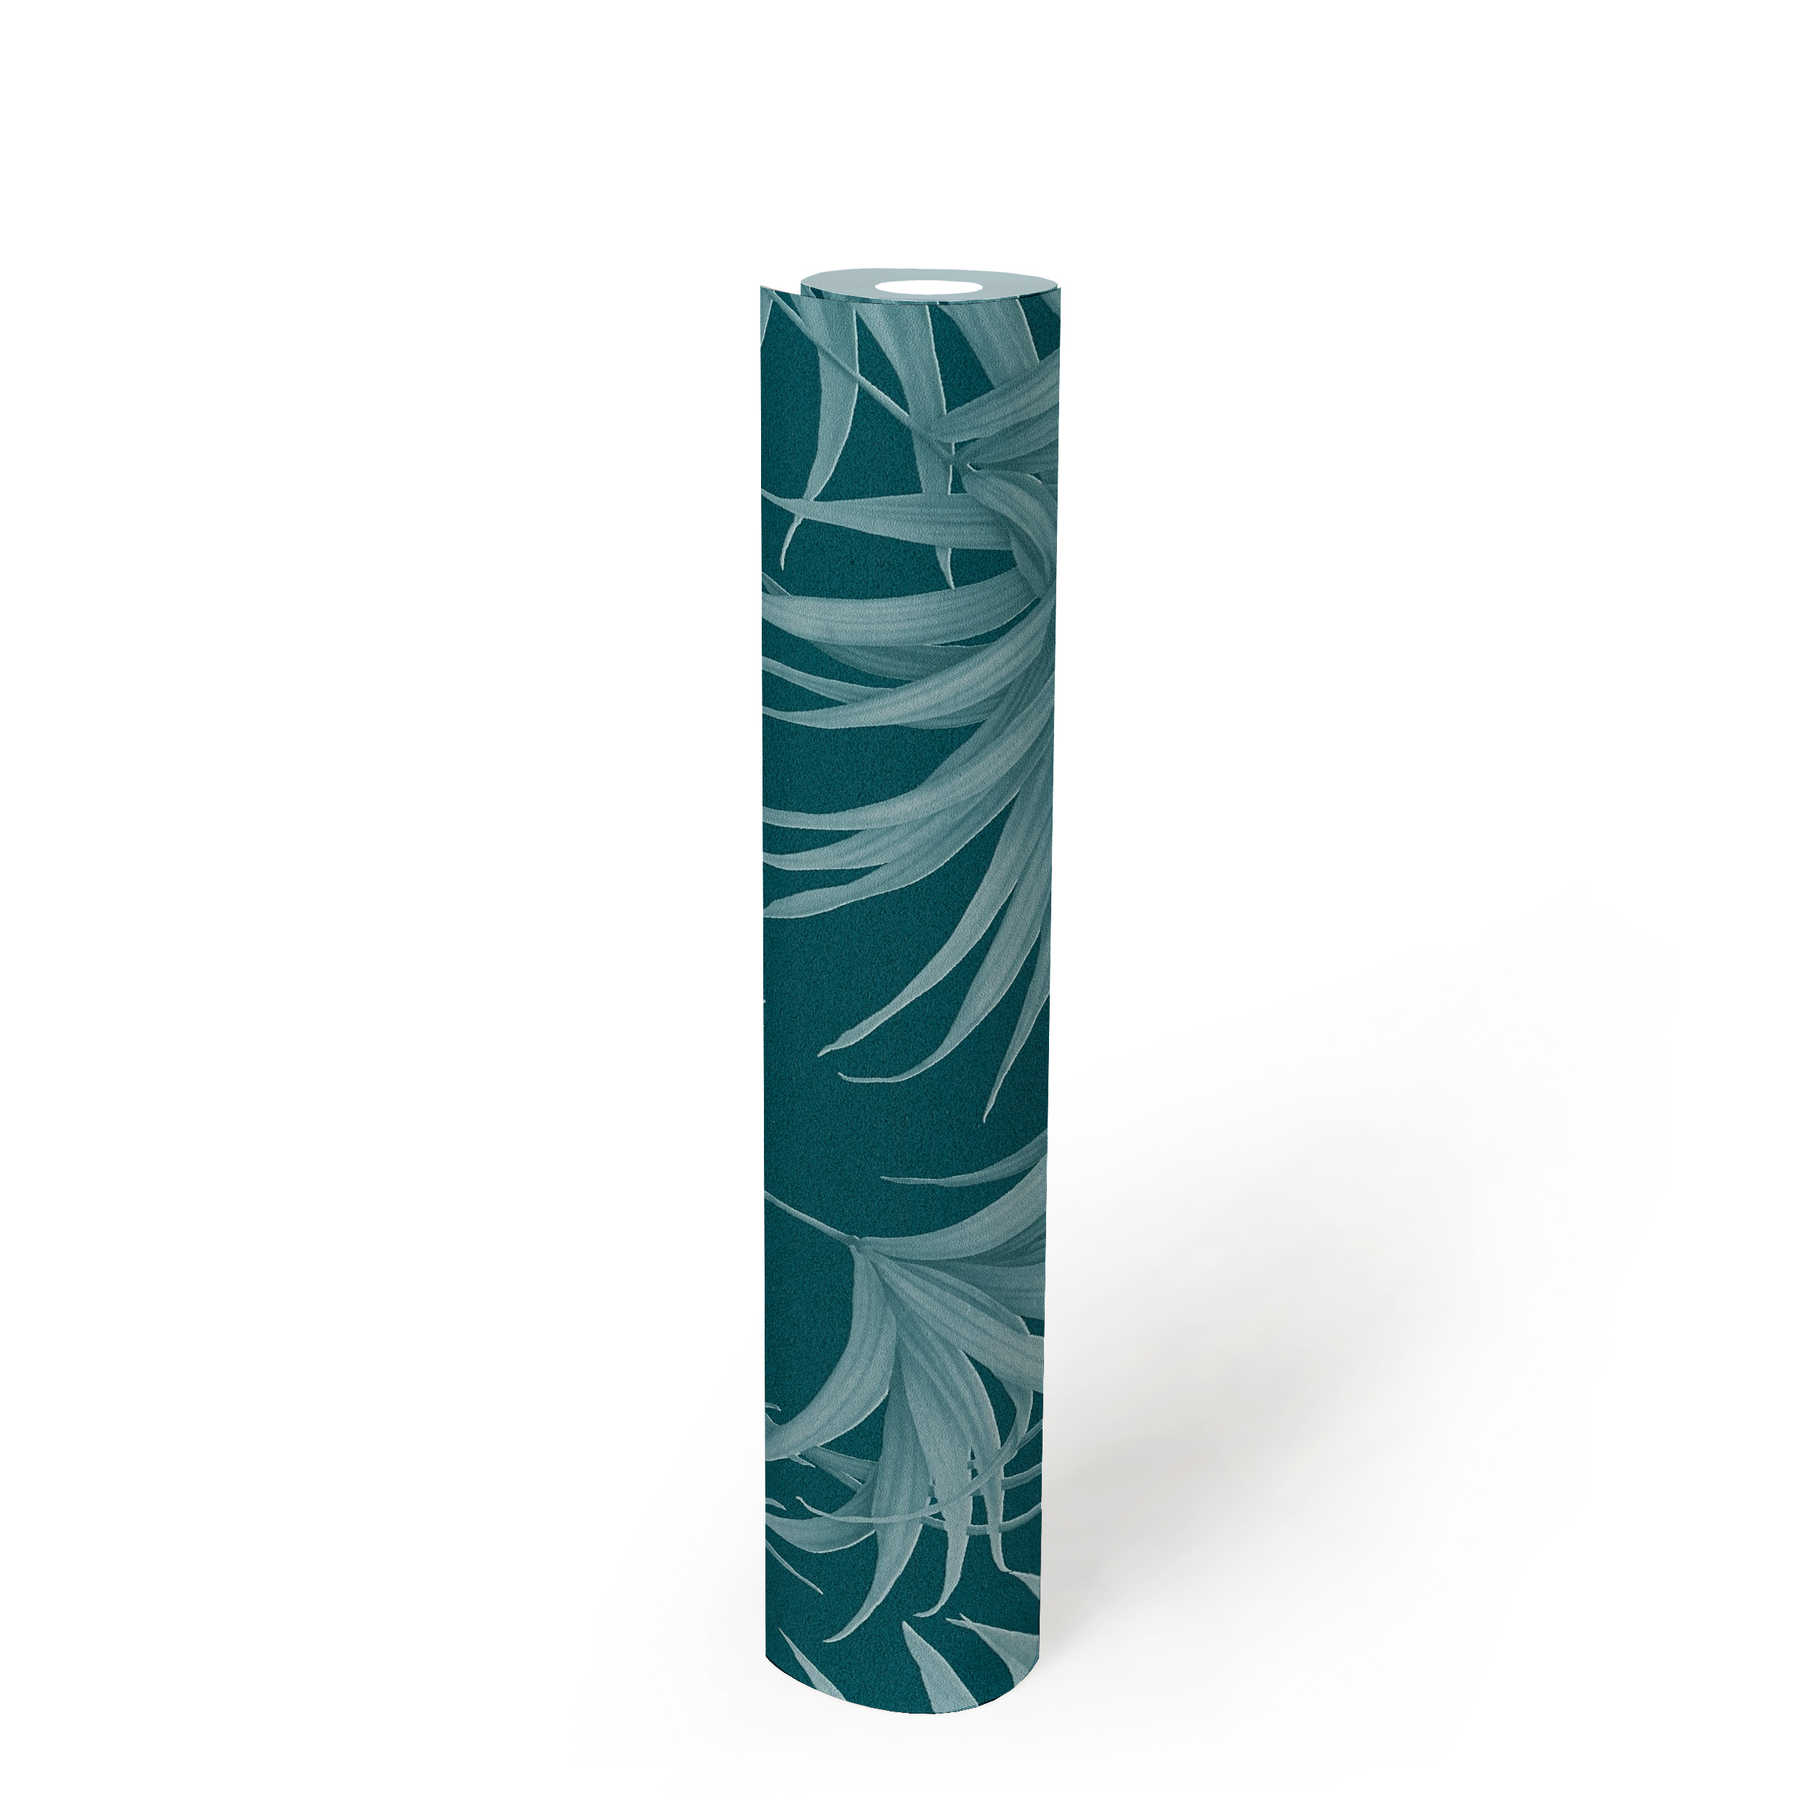             Papier peint feuilles de palmier avec motif ton sur ton en pétrole - bleu
        